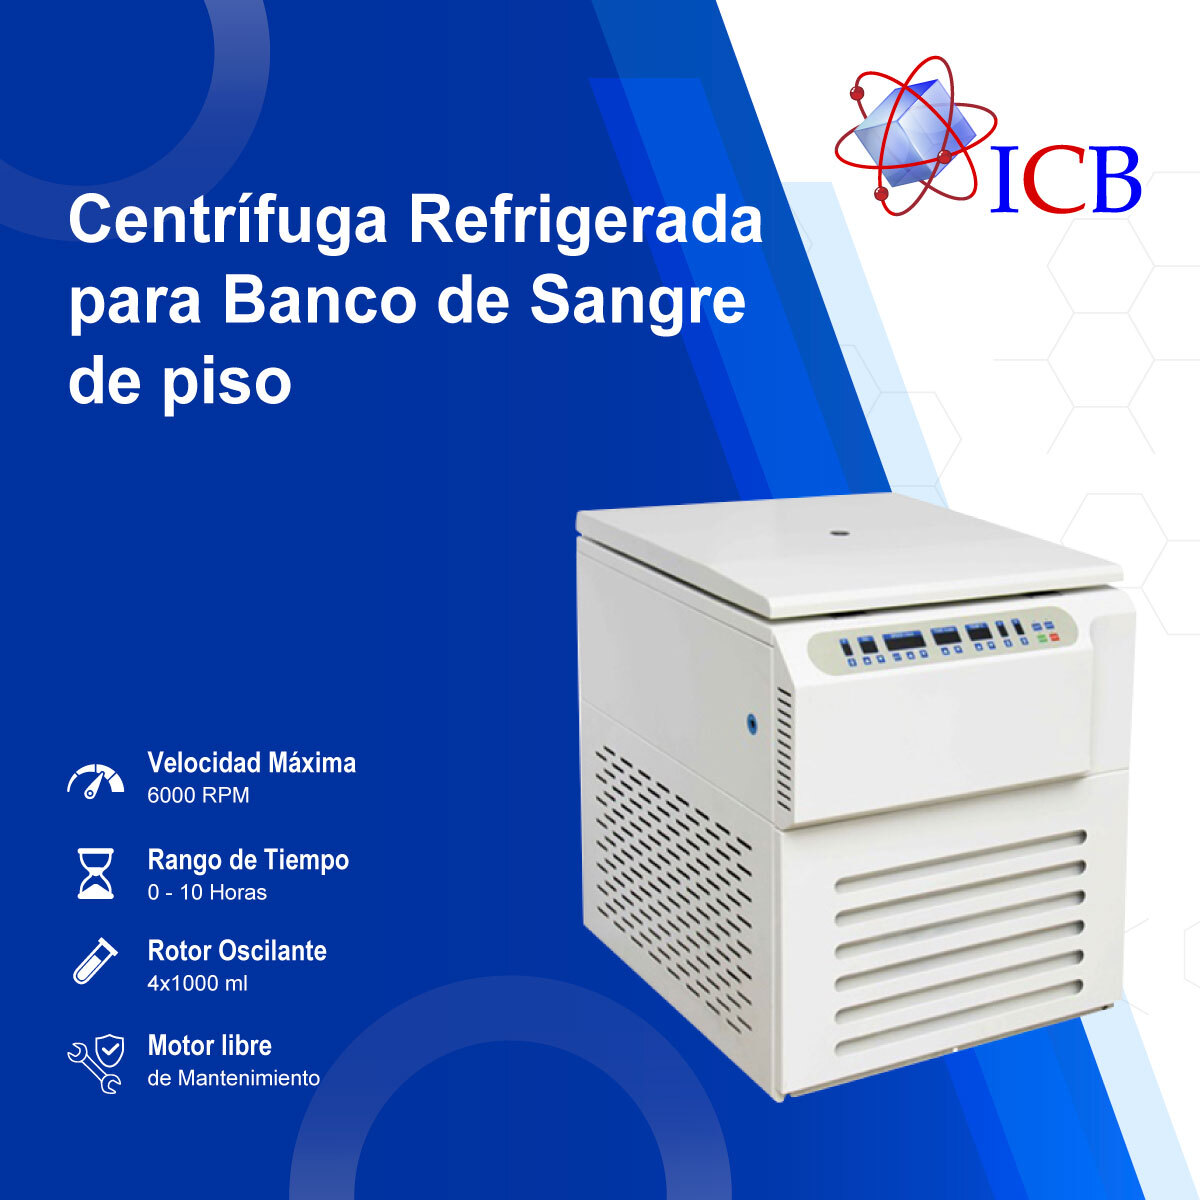 Centrifuga refrigerada Banco de Sangre